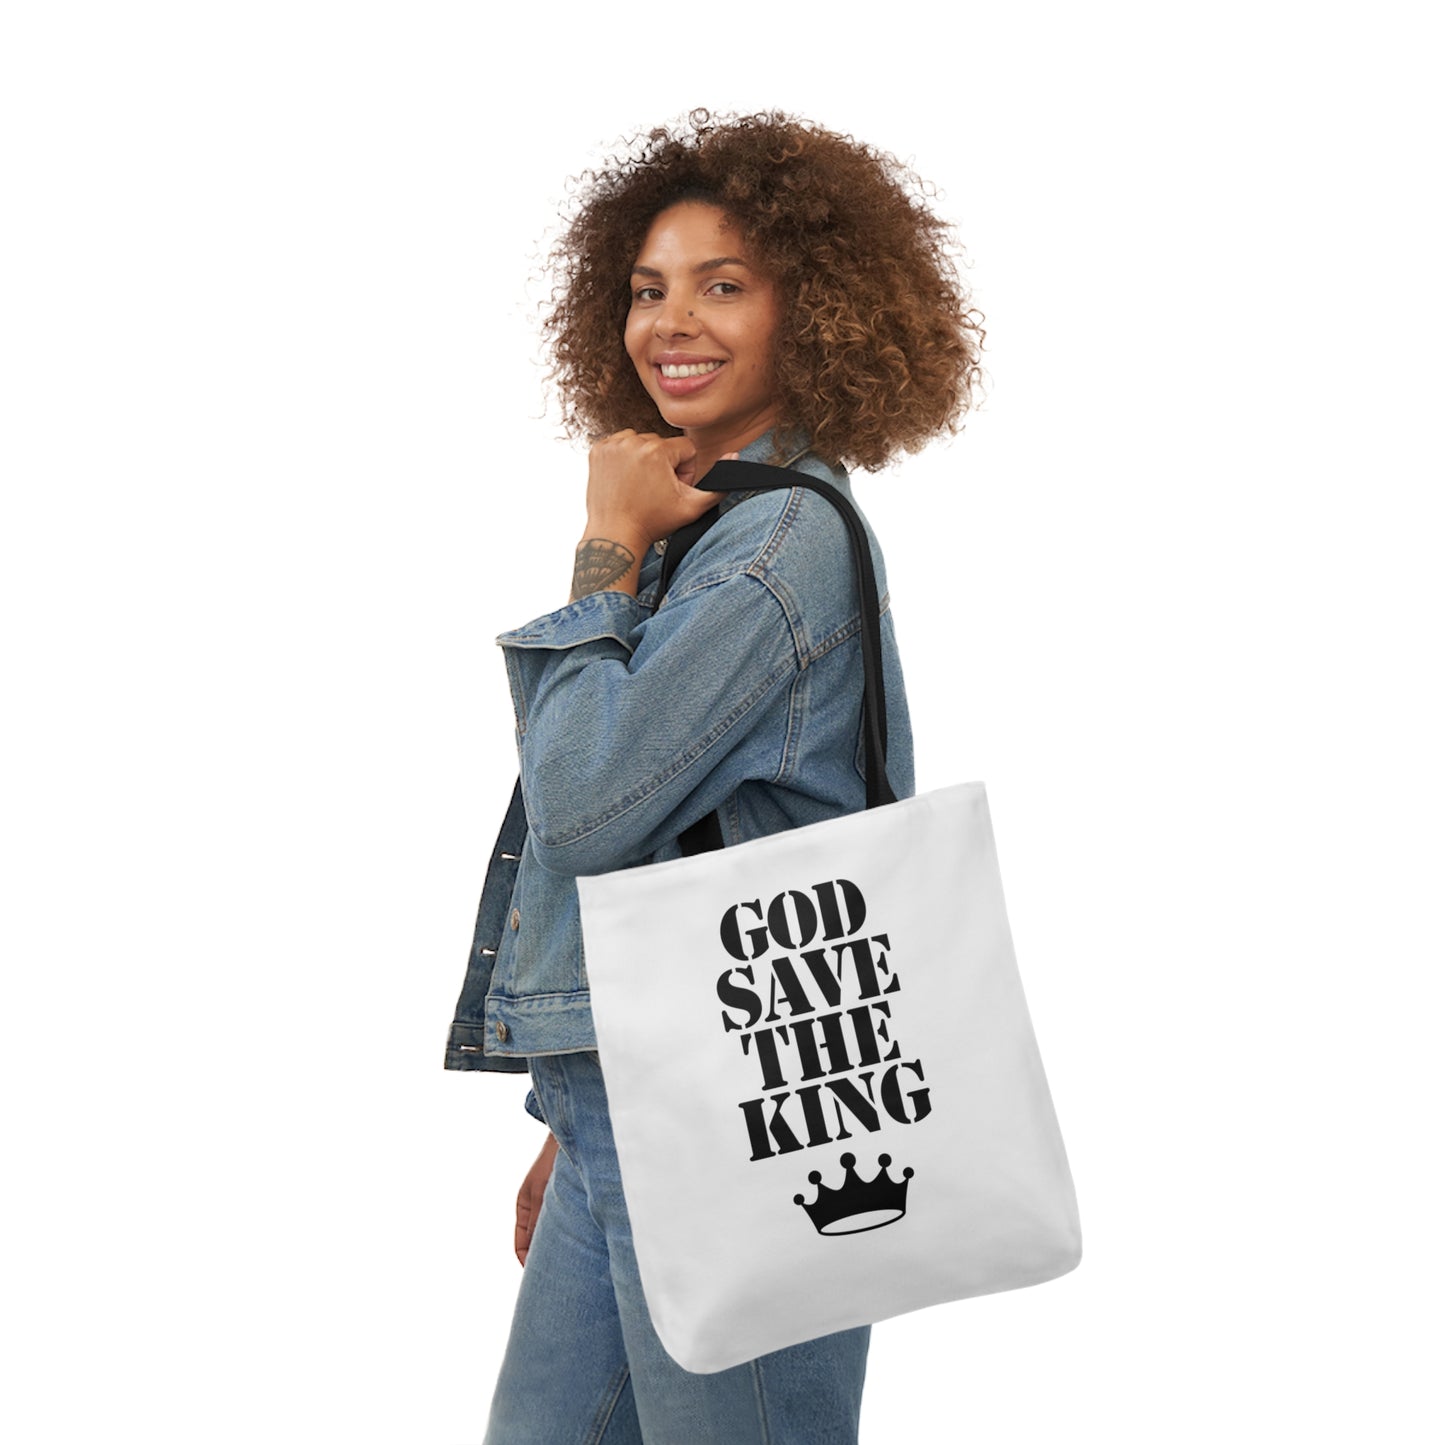 God Save The King Tote Bag